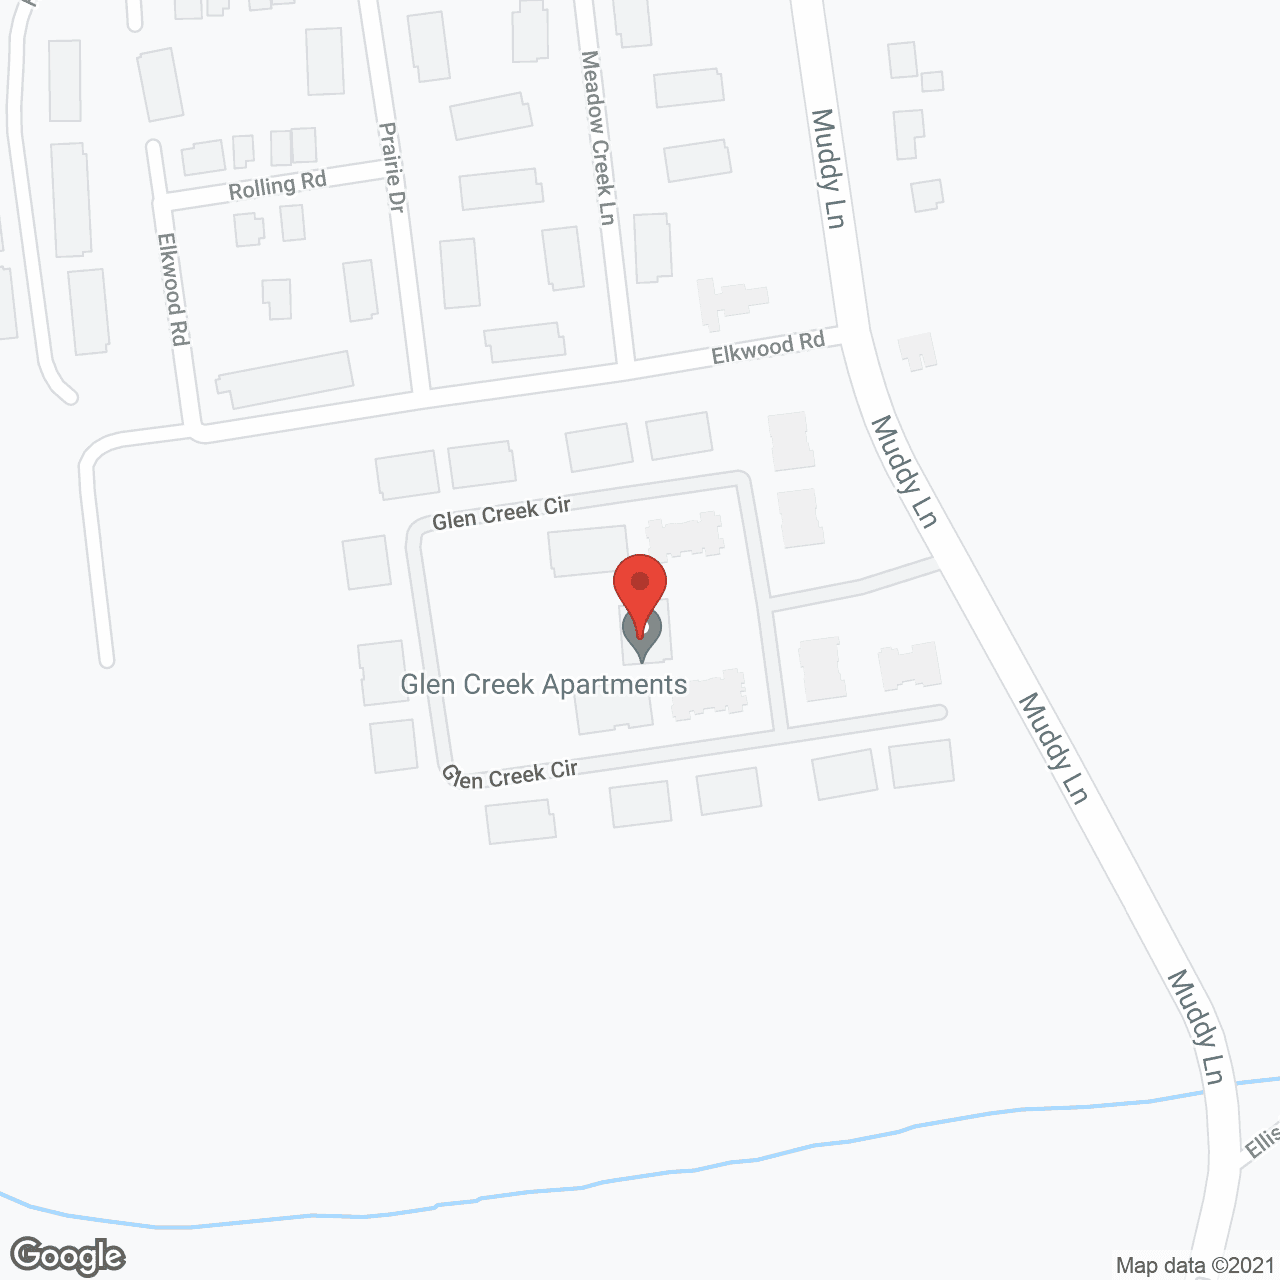 Glen Creek in google map